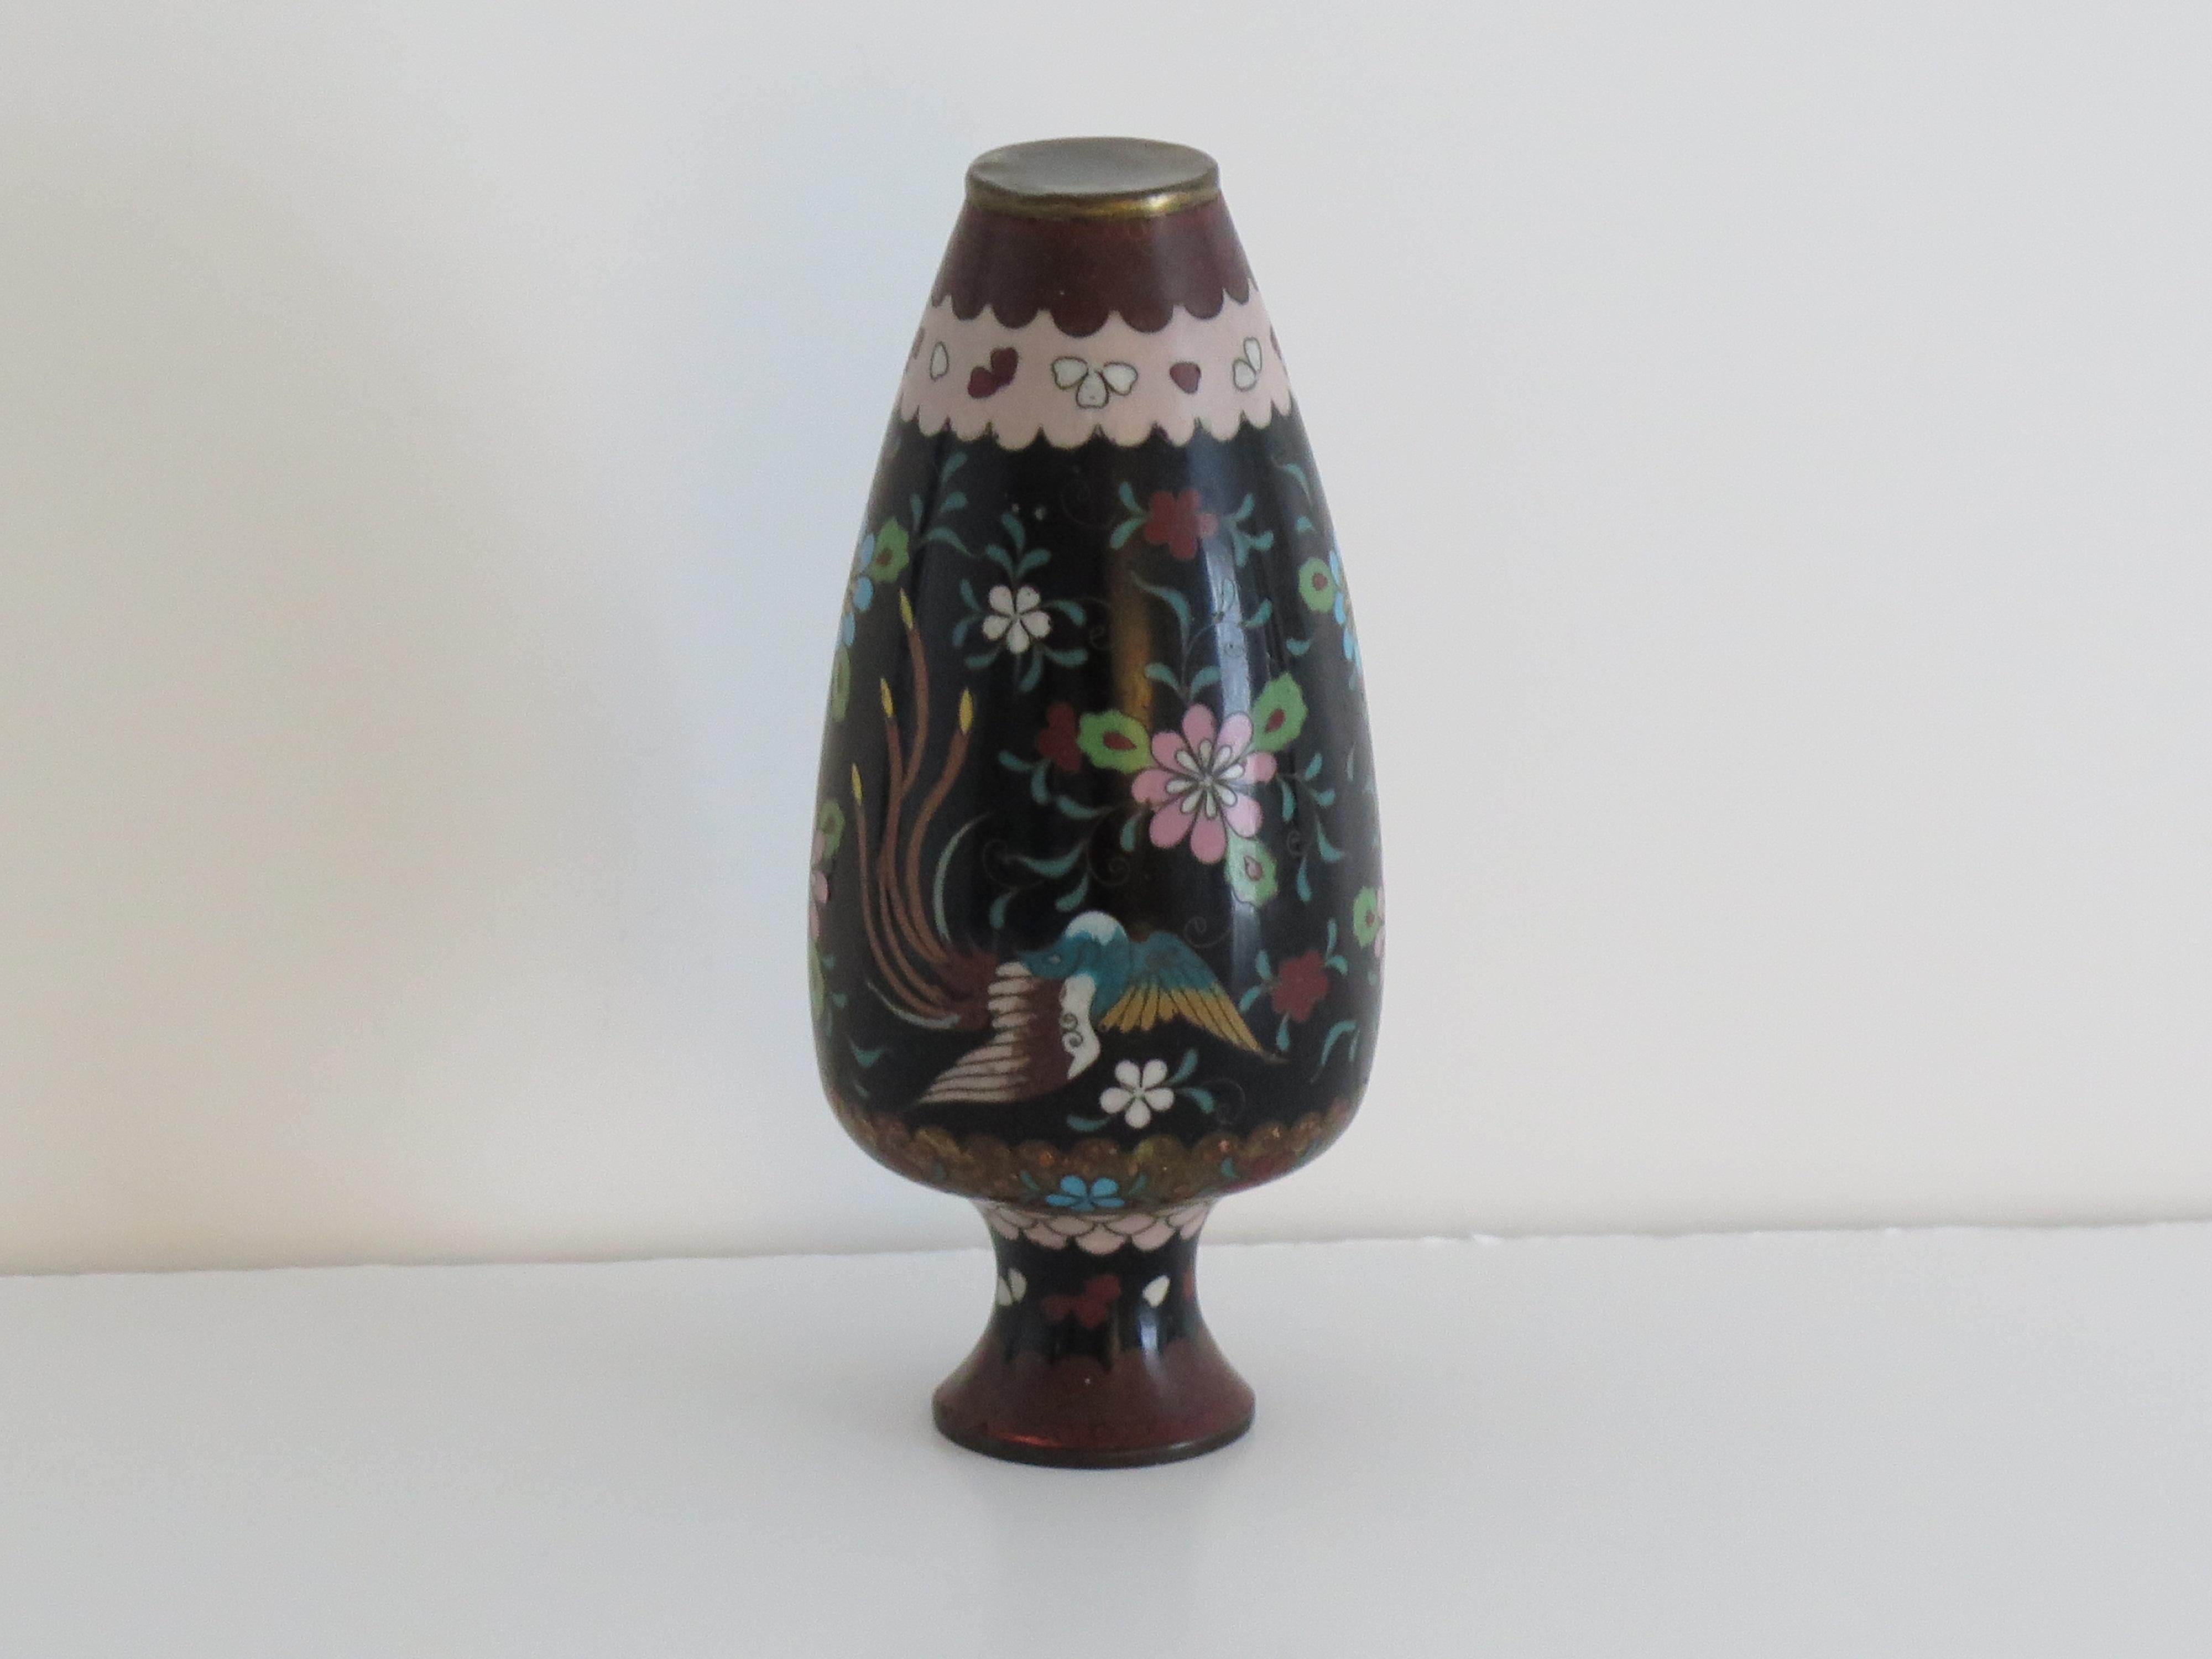 Dies ist eine sehr dekorative chinesische Cloisonné-Vase aus der Mitte des 19. Jahrhunderts, Qing-Periode. 

Die Vase hat eine gute Balusterform. Sie ist aus einer Bronzelegierung mit reichen Emaillen in vielen verschiedenen Farben auf schwarzem